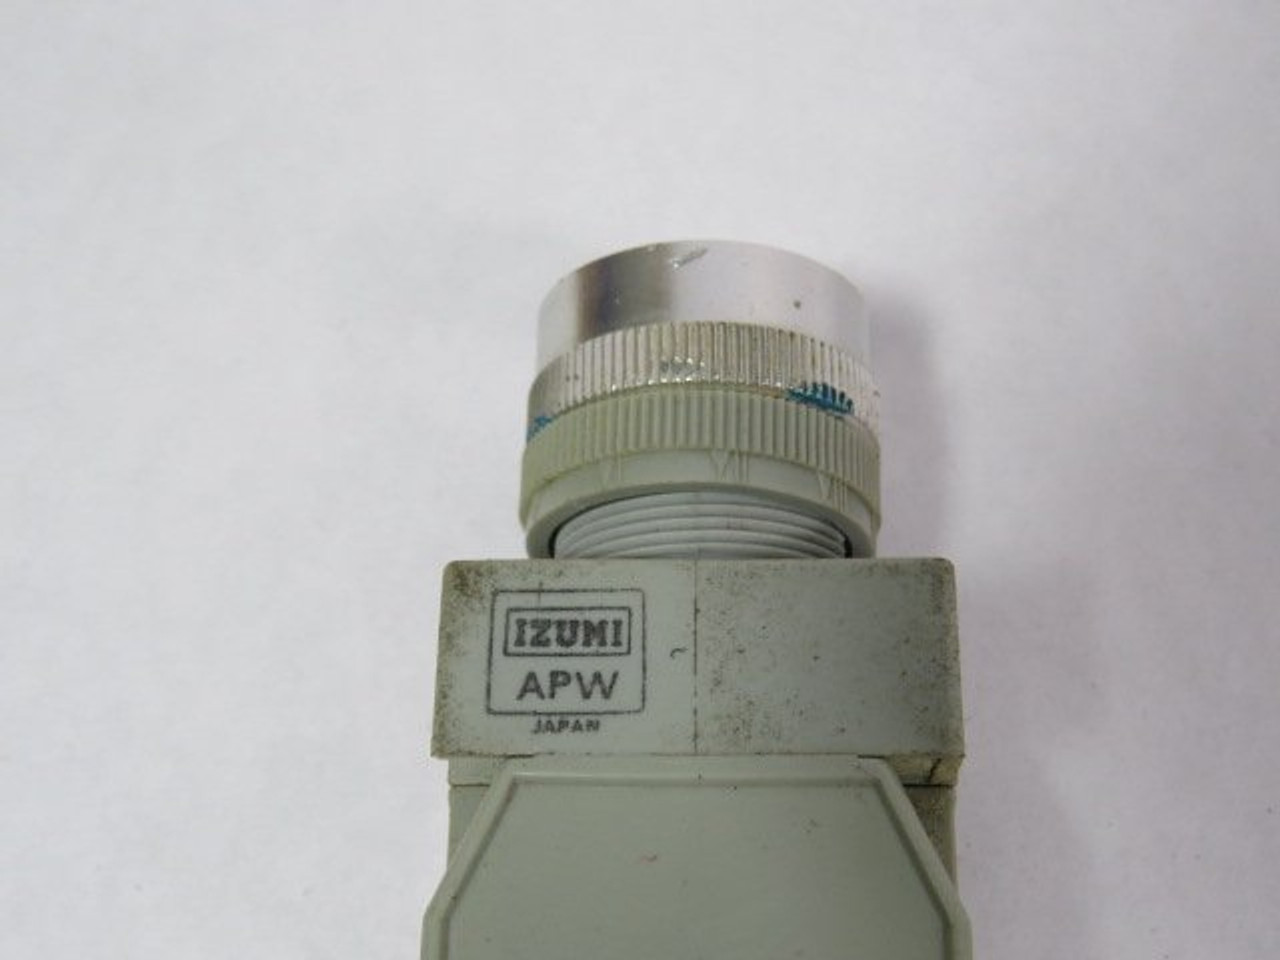 Izumi APW126D Pilot Light Operator 200/220V 50/60HZ No Lens USED